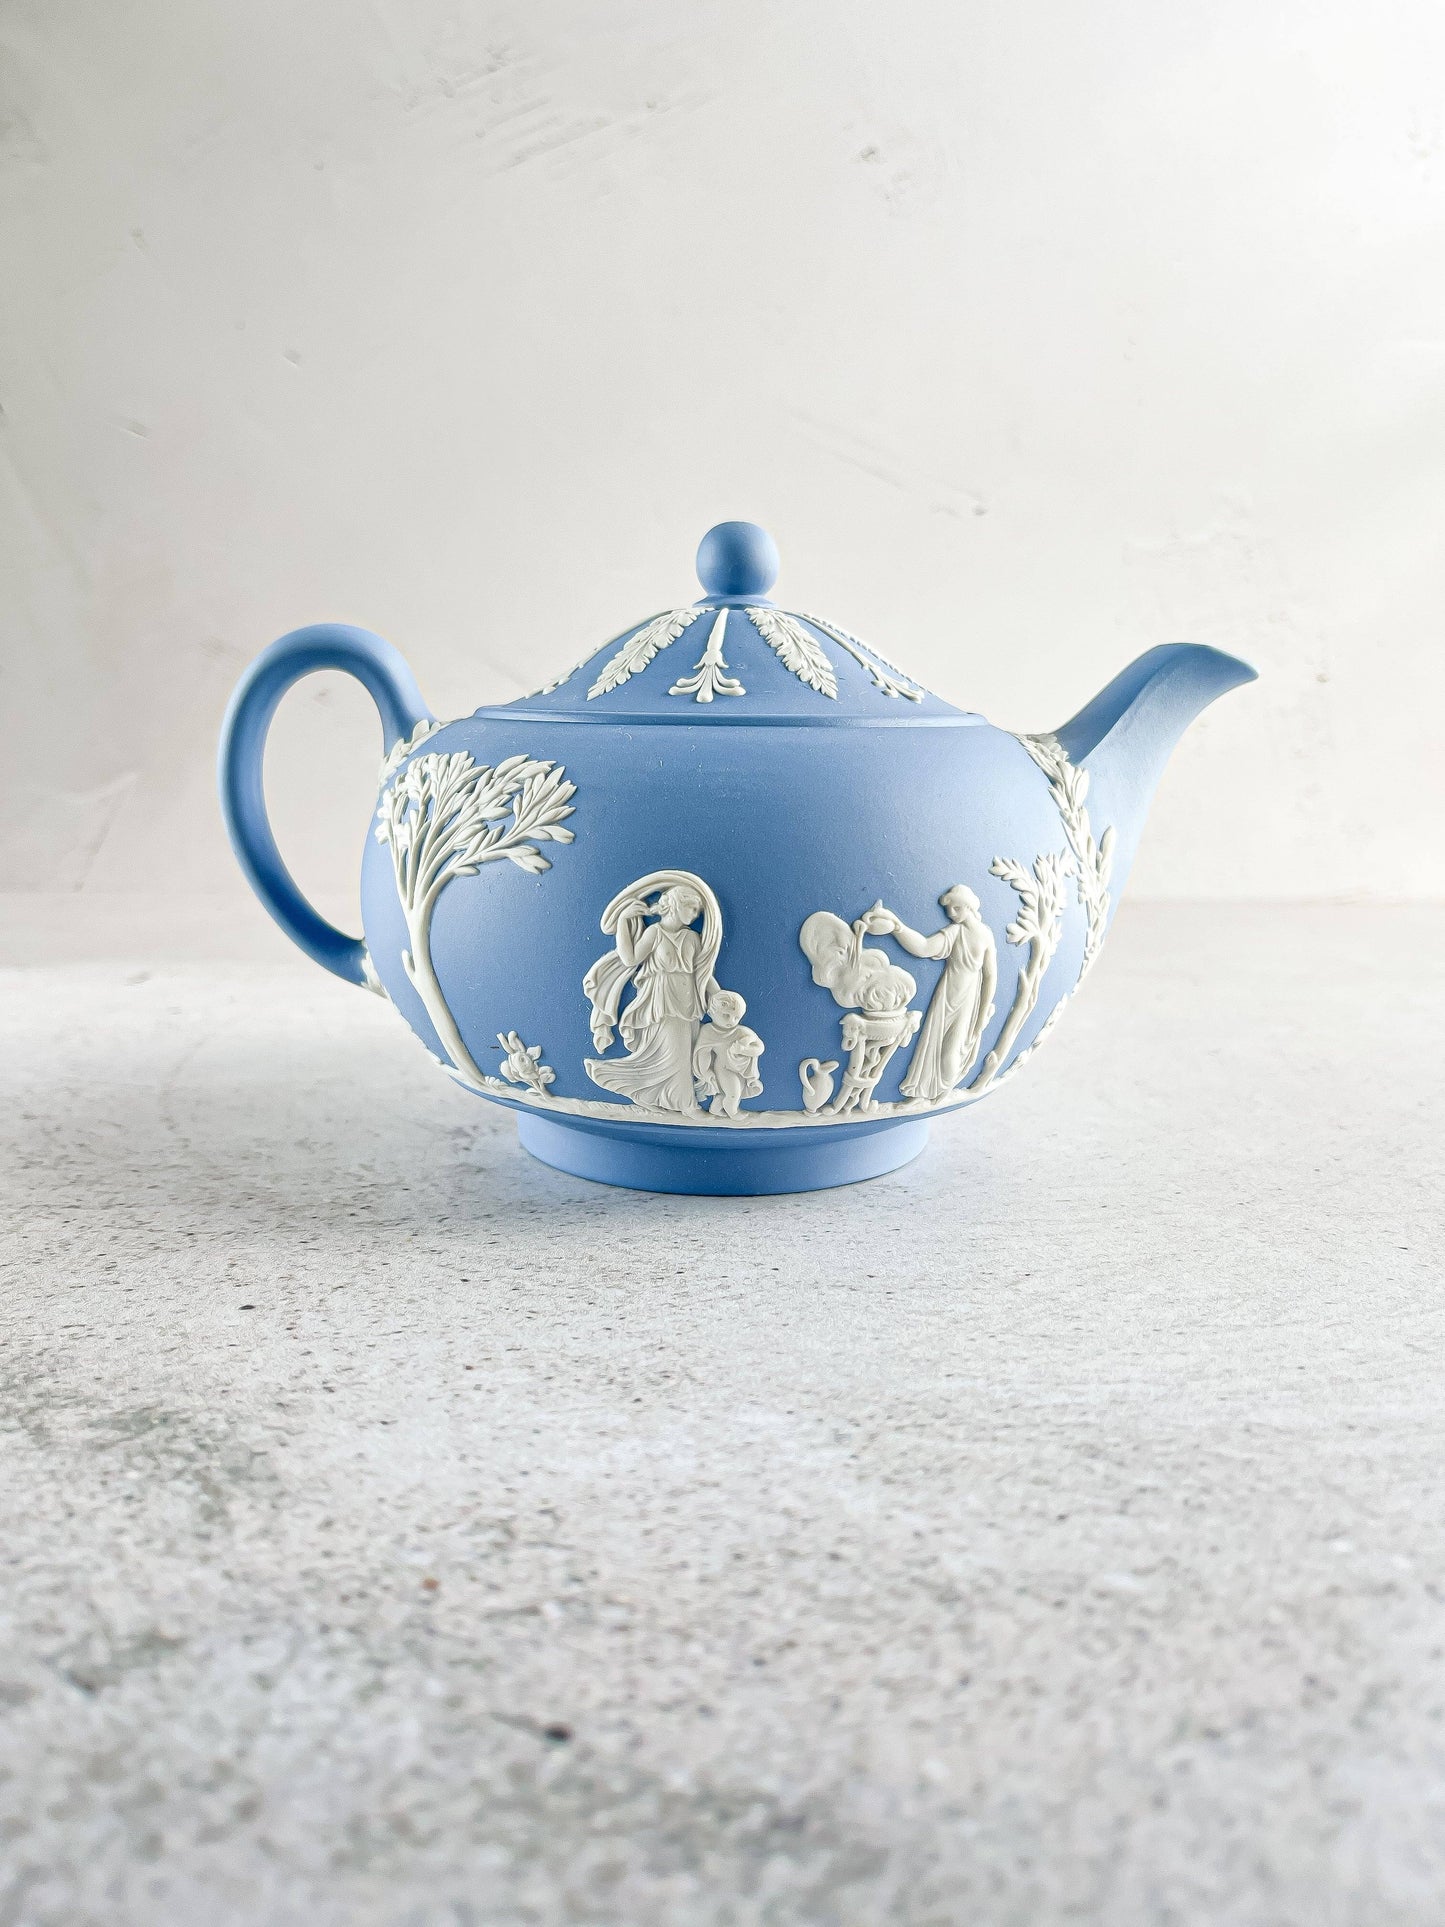 Wedgwood Jasperware Pale Blue Teapot - Classic Elegance - SOSC Home